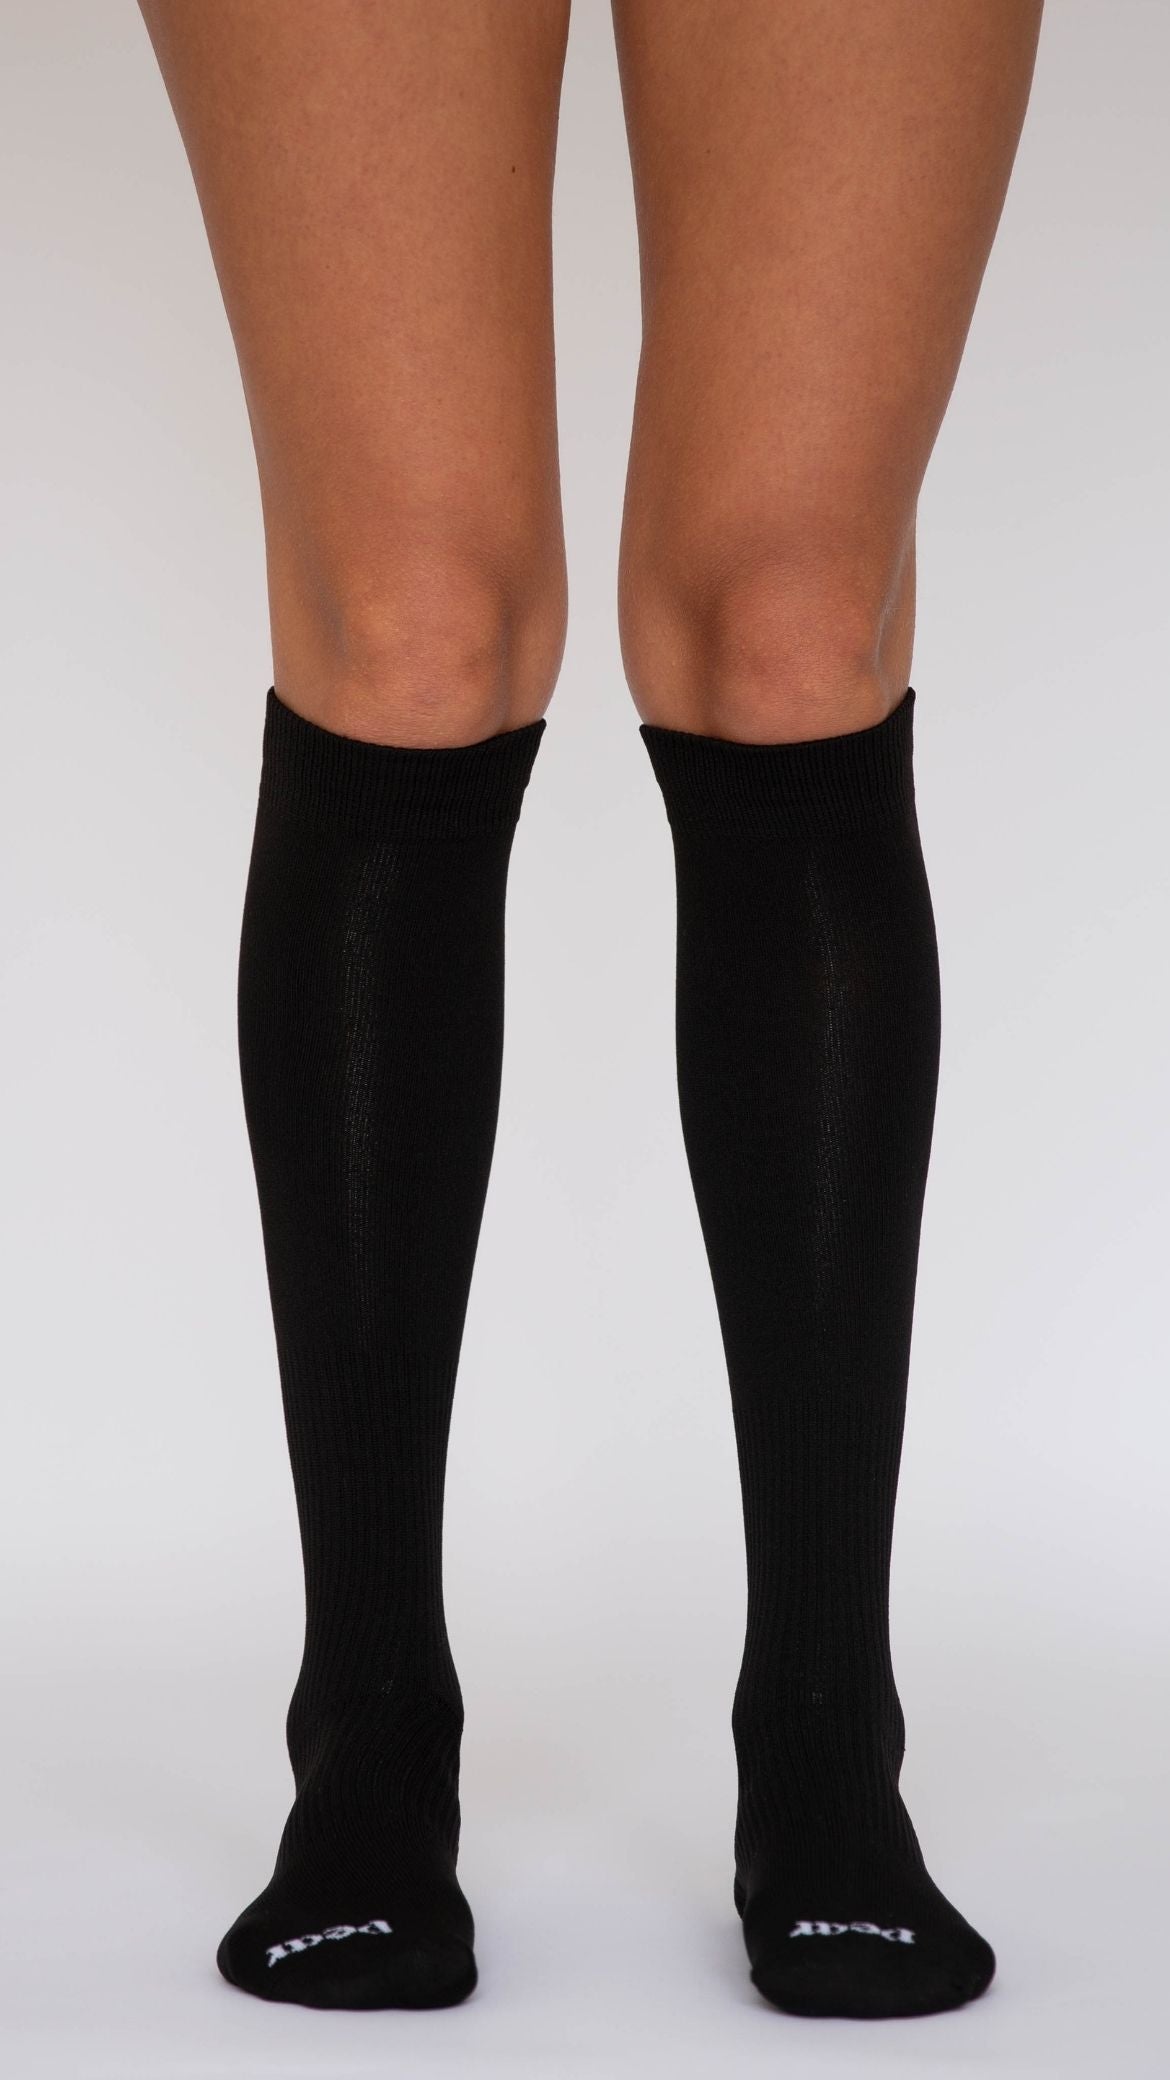 Compression Socks Soild Color Women Long Socks Over Knee Thigh High Black  White Over The Knee Stockings Warm Knee Socks